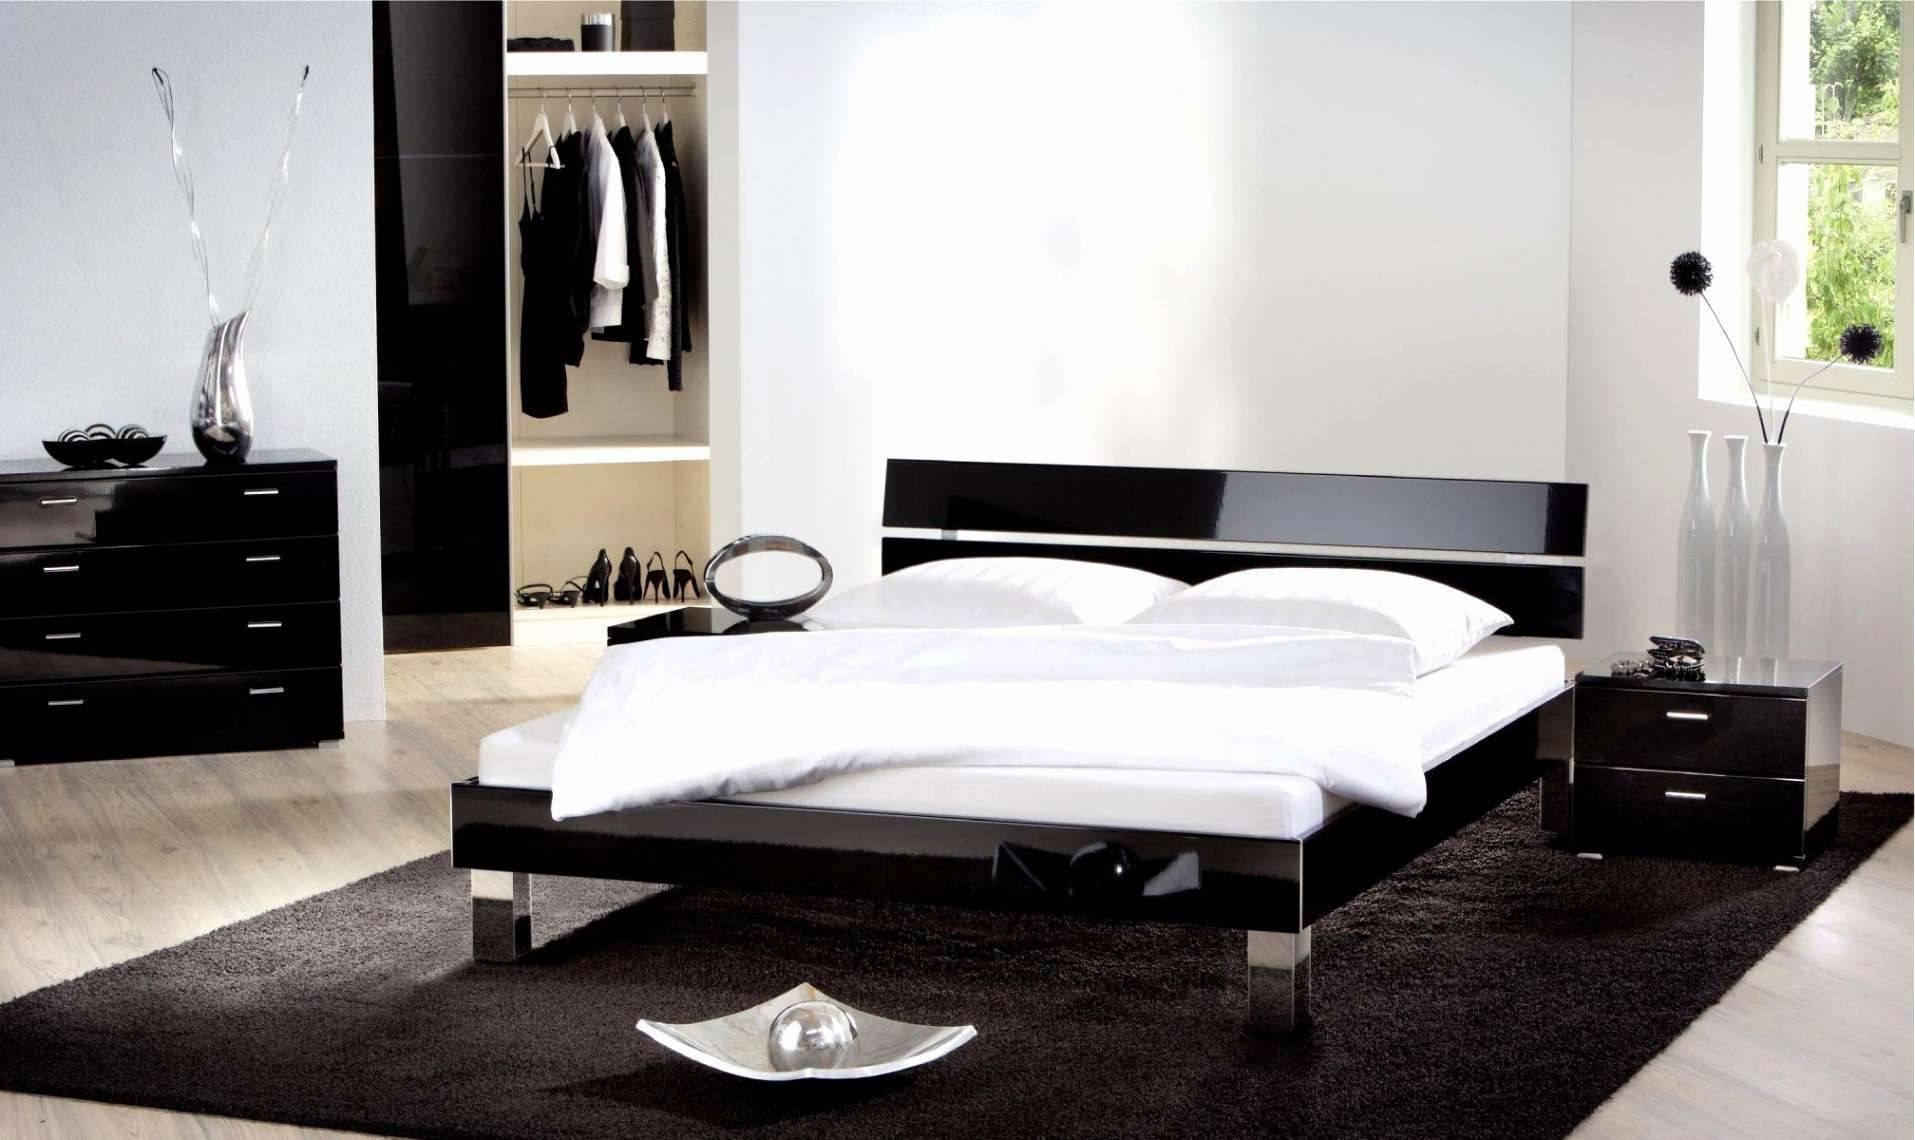 Diy Deko Best Of Modern Pop Design for Bedroom Lovely Luxus Deko Ideen Diy